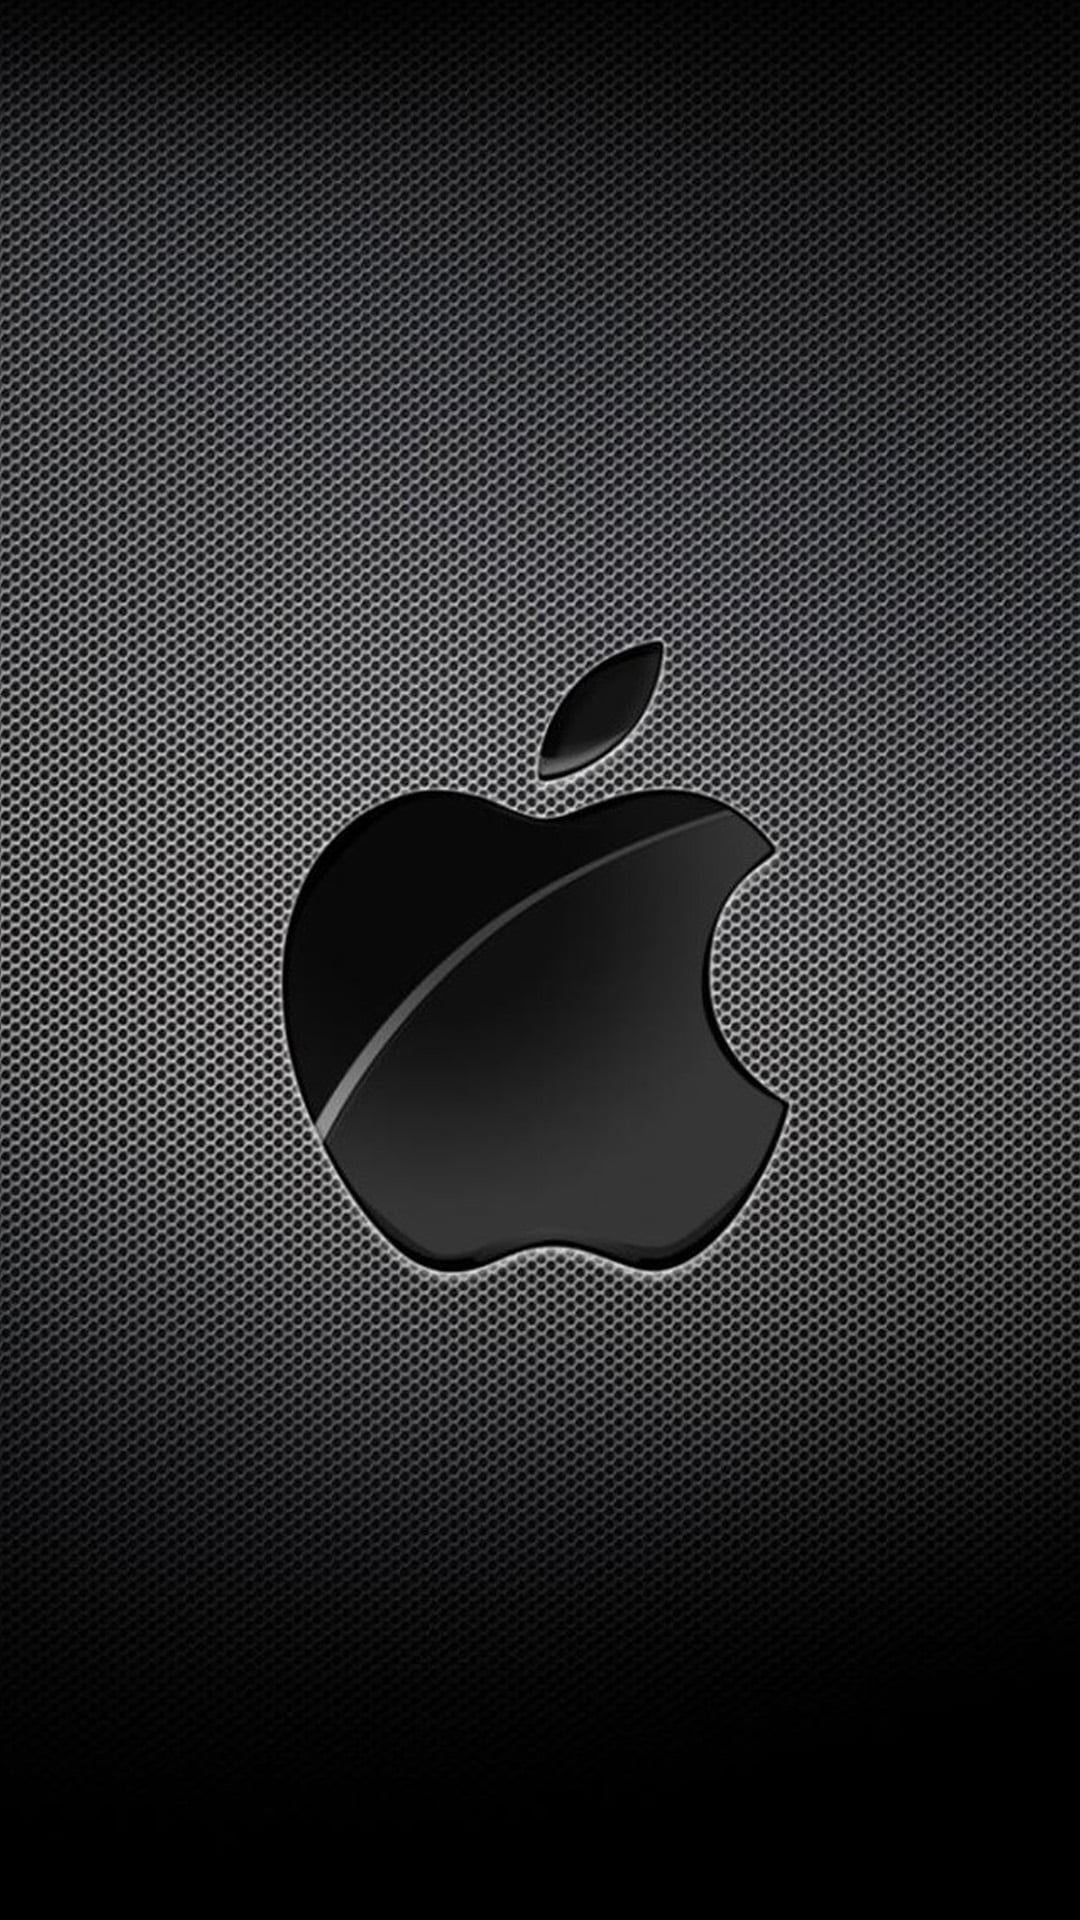 Apple メタルブラック Iphone Wallpapers